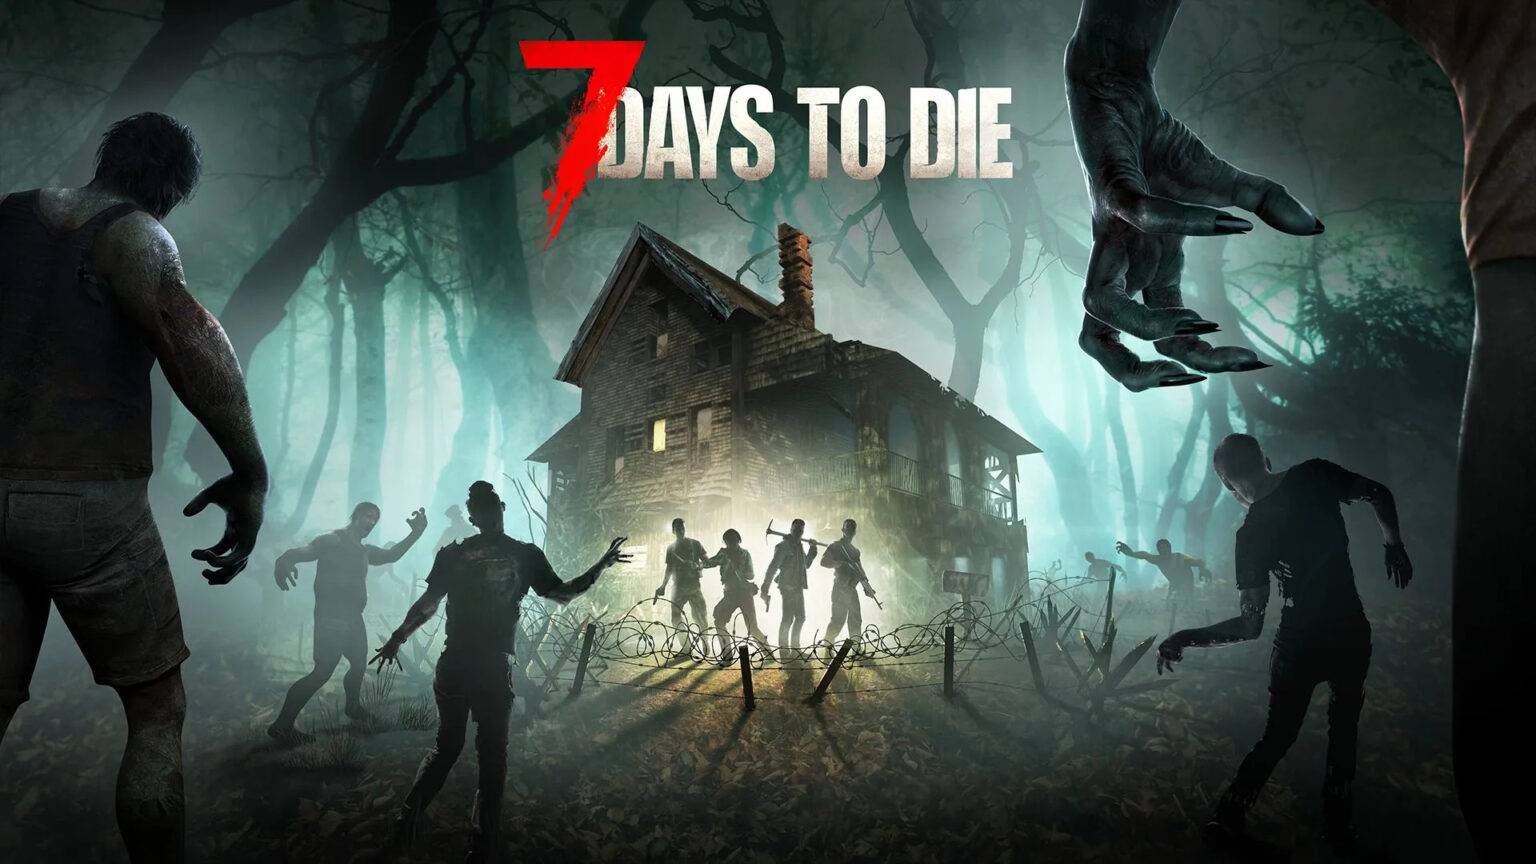 7 Days to die. Хорошая игра для коопа на выживание против зомби.